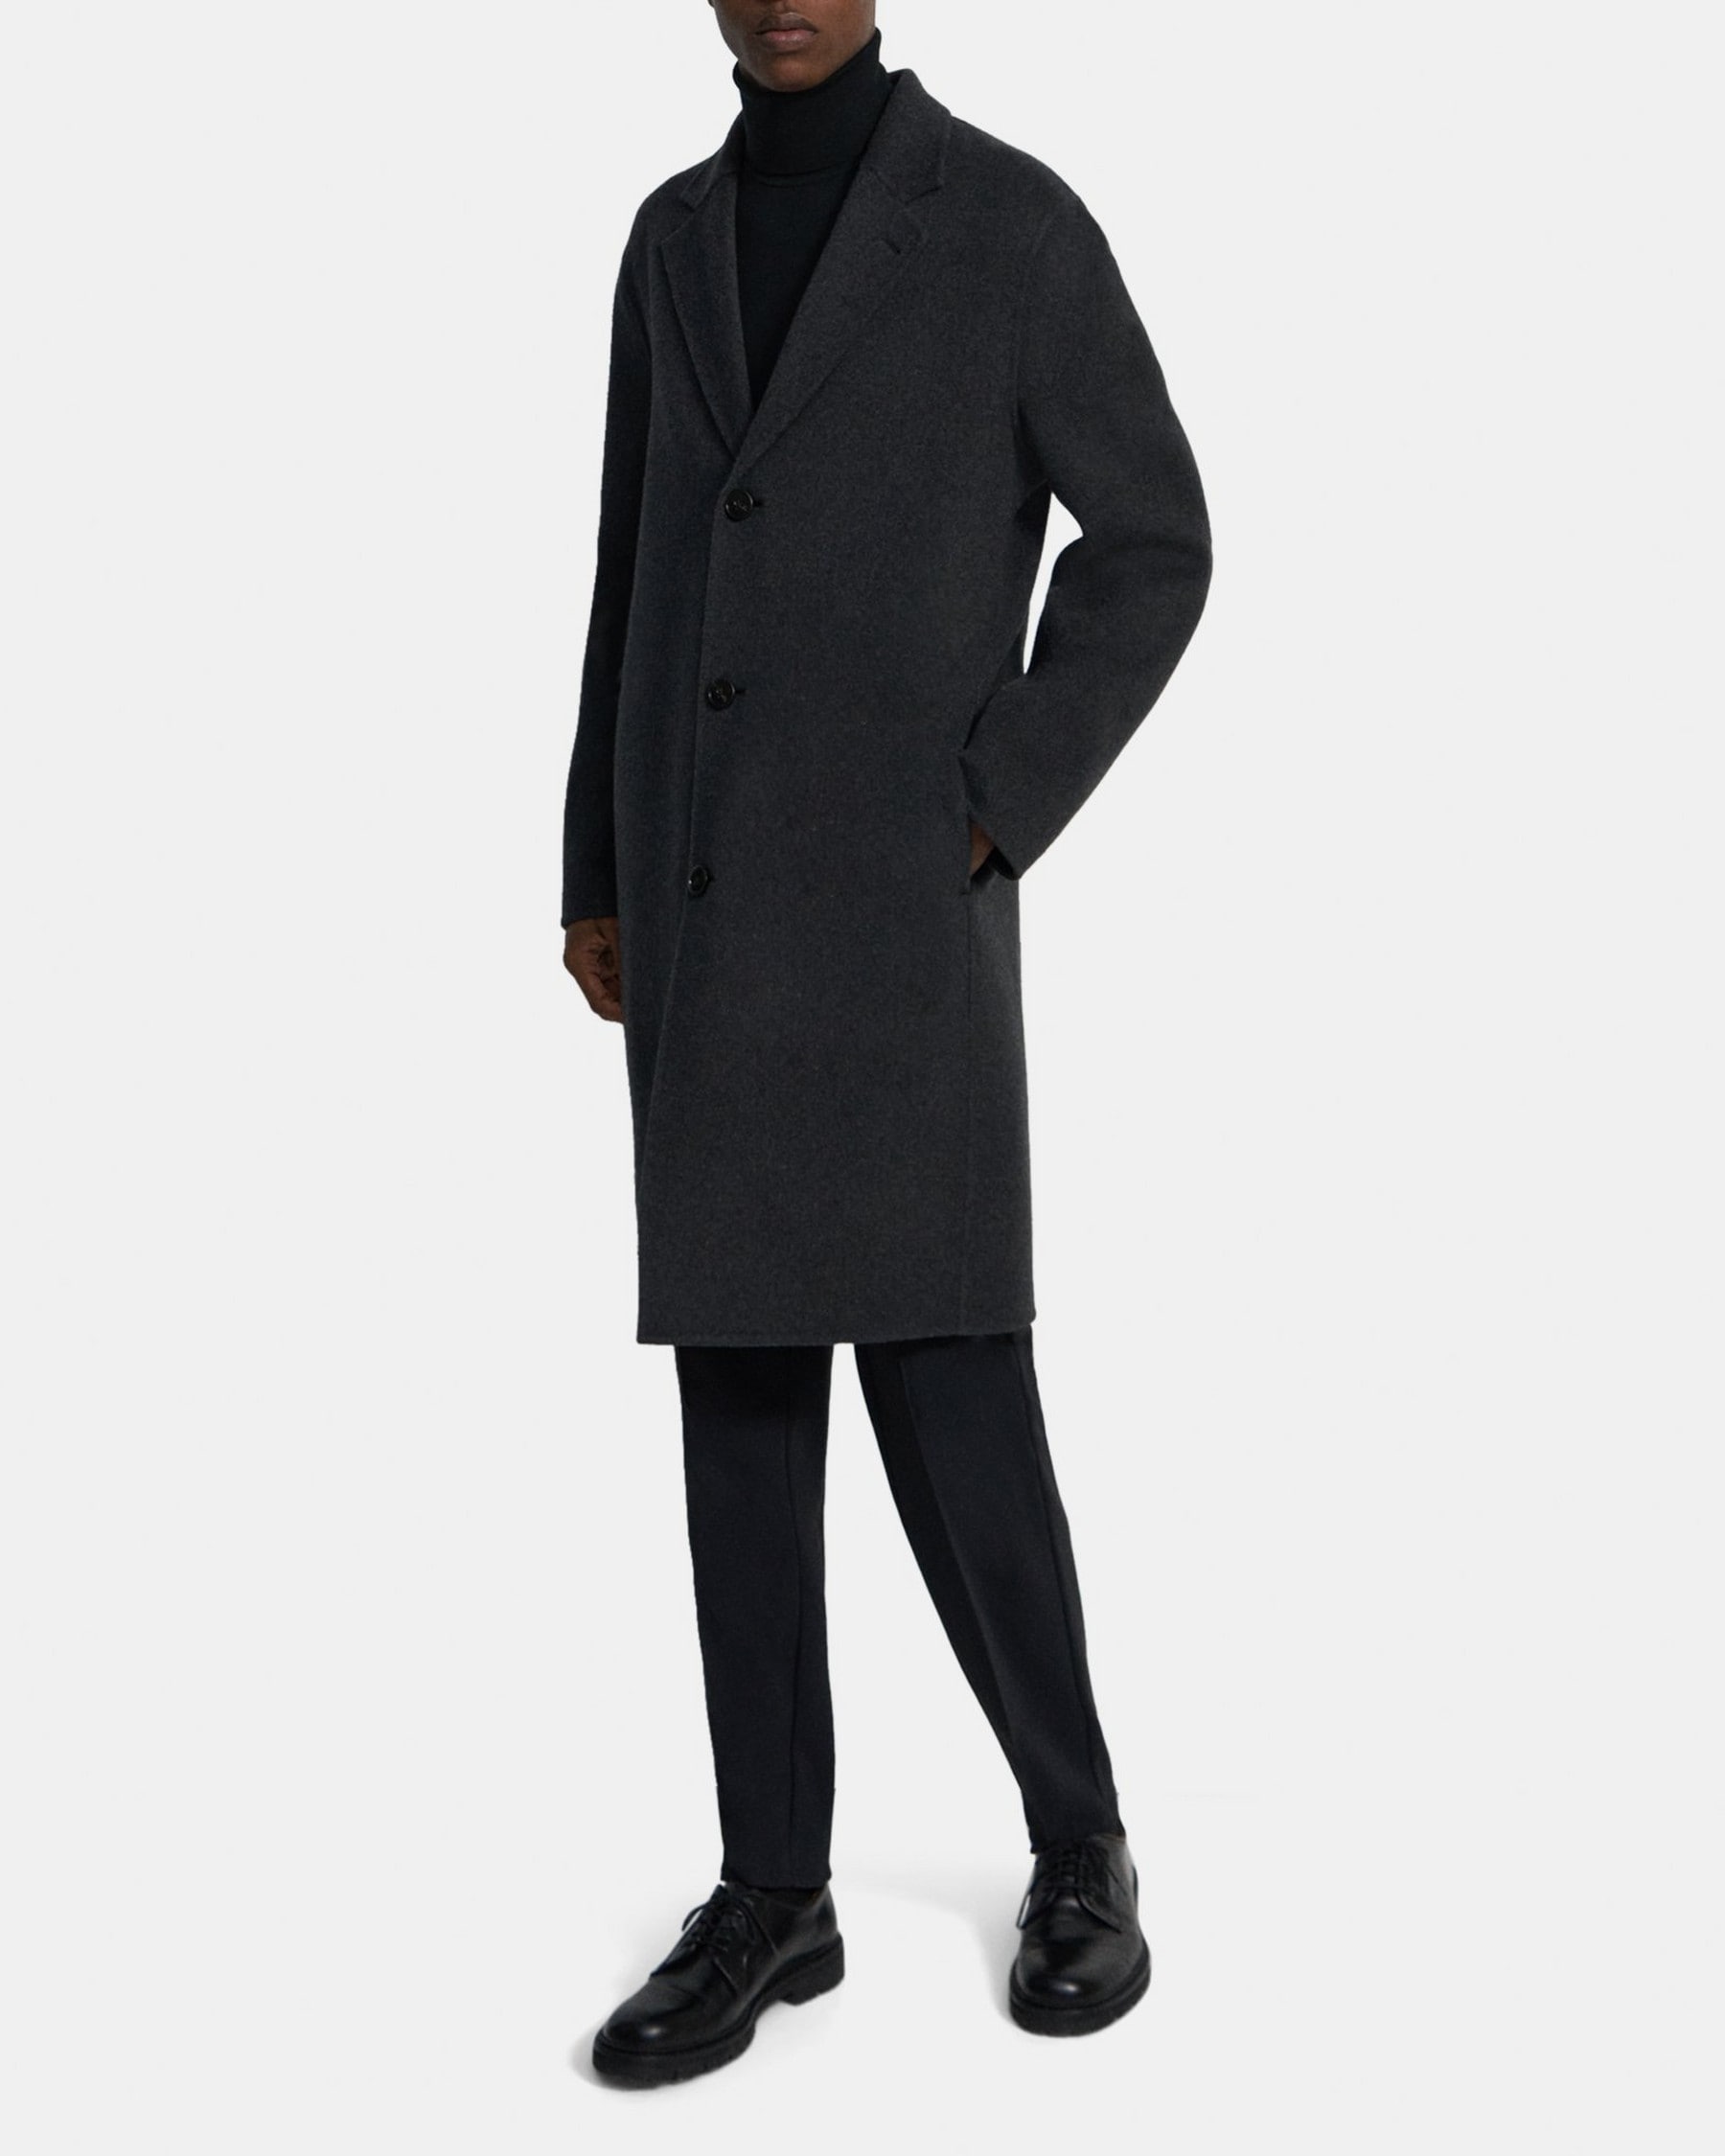 띠어리 Theory Single-Breasted Coat in Double-Face Wool-Cashmere,PESTLE MELANGE